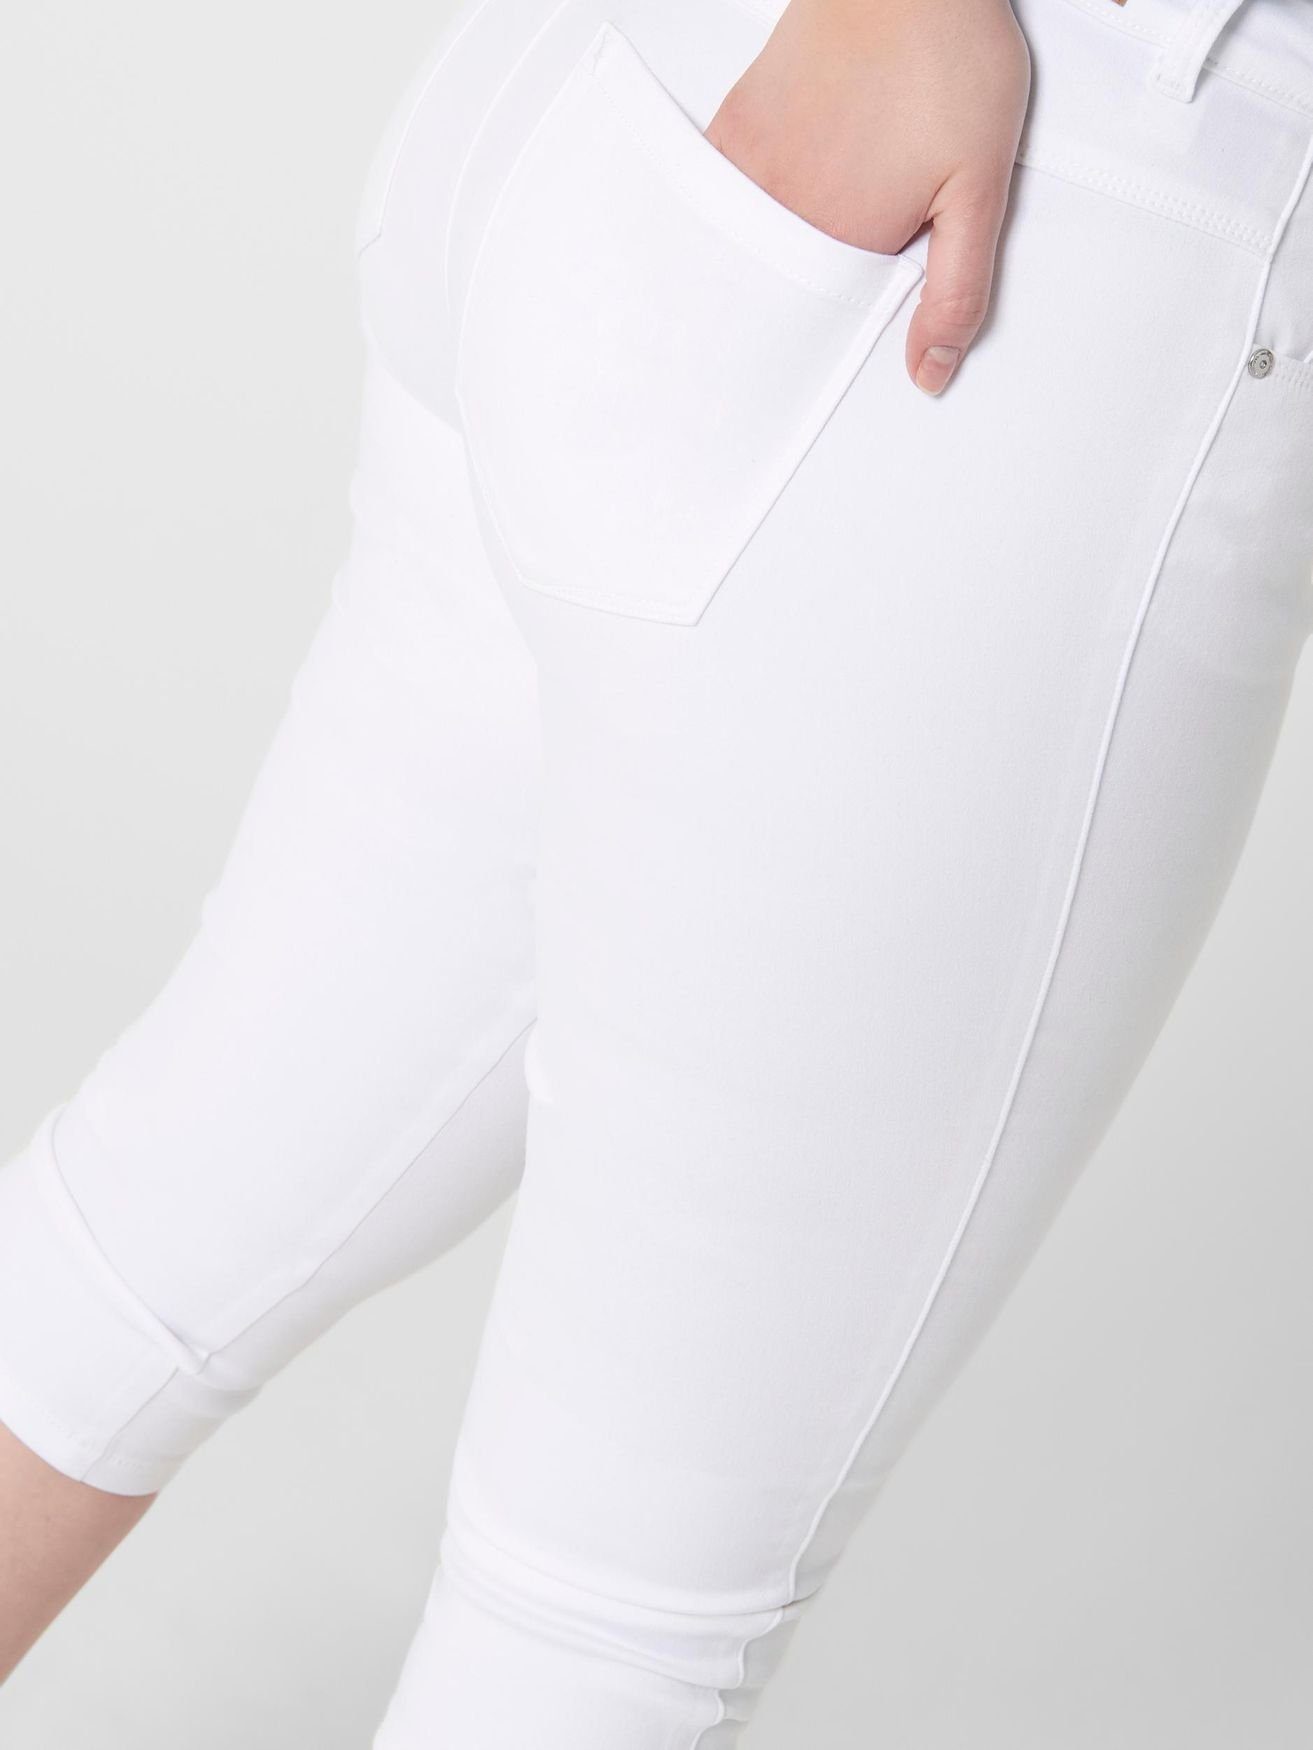 CARMAKOMA Shorts CARAUGUSTA Denim Weiß Stretch Jeans 3/4 ONLY in Capri Hose 4899 Caprihose